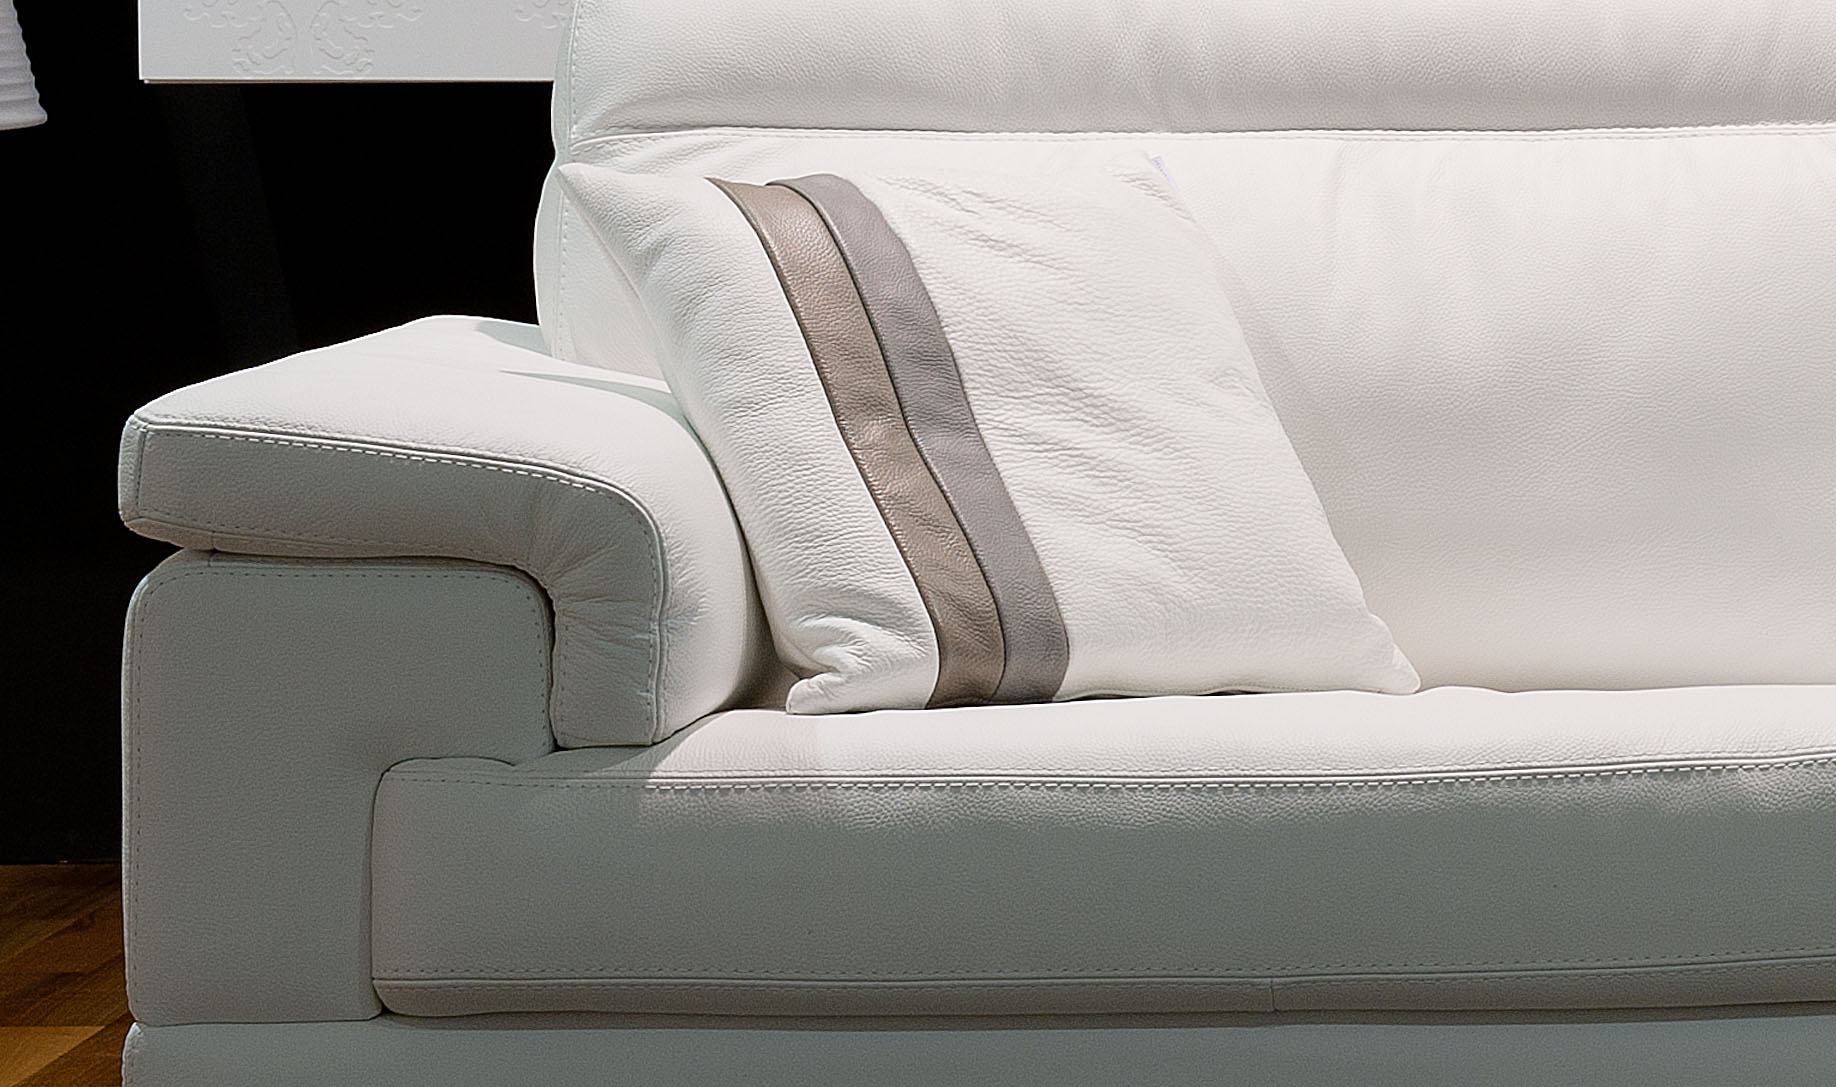 Contemporary Leather Sofa Set on Chrome Frame - Click Image to Close